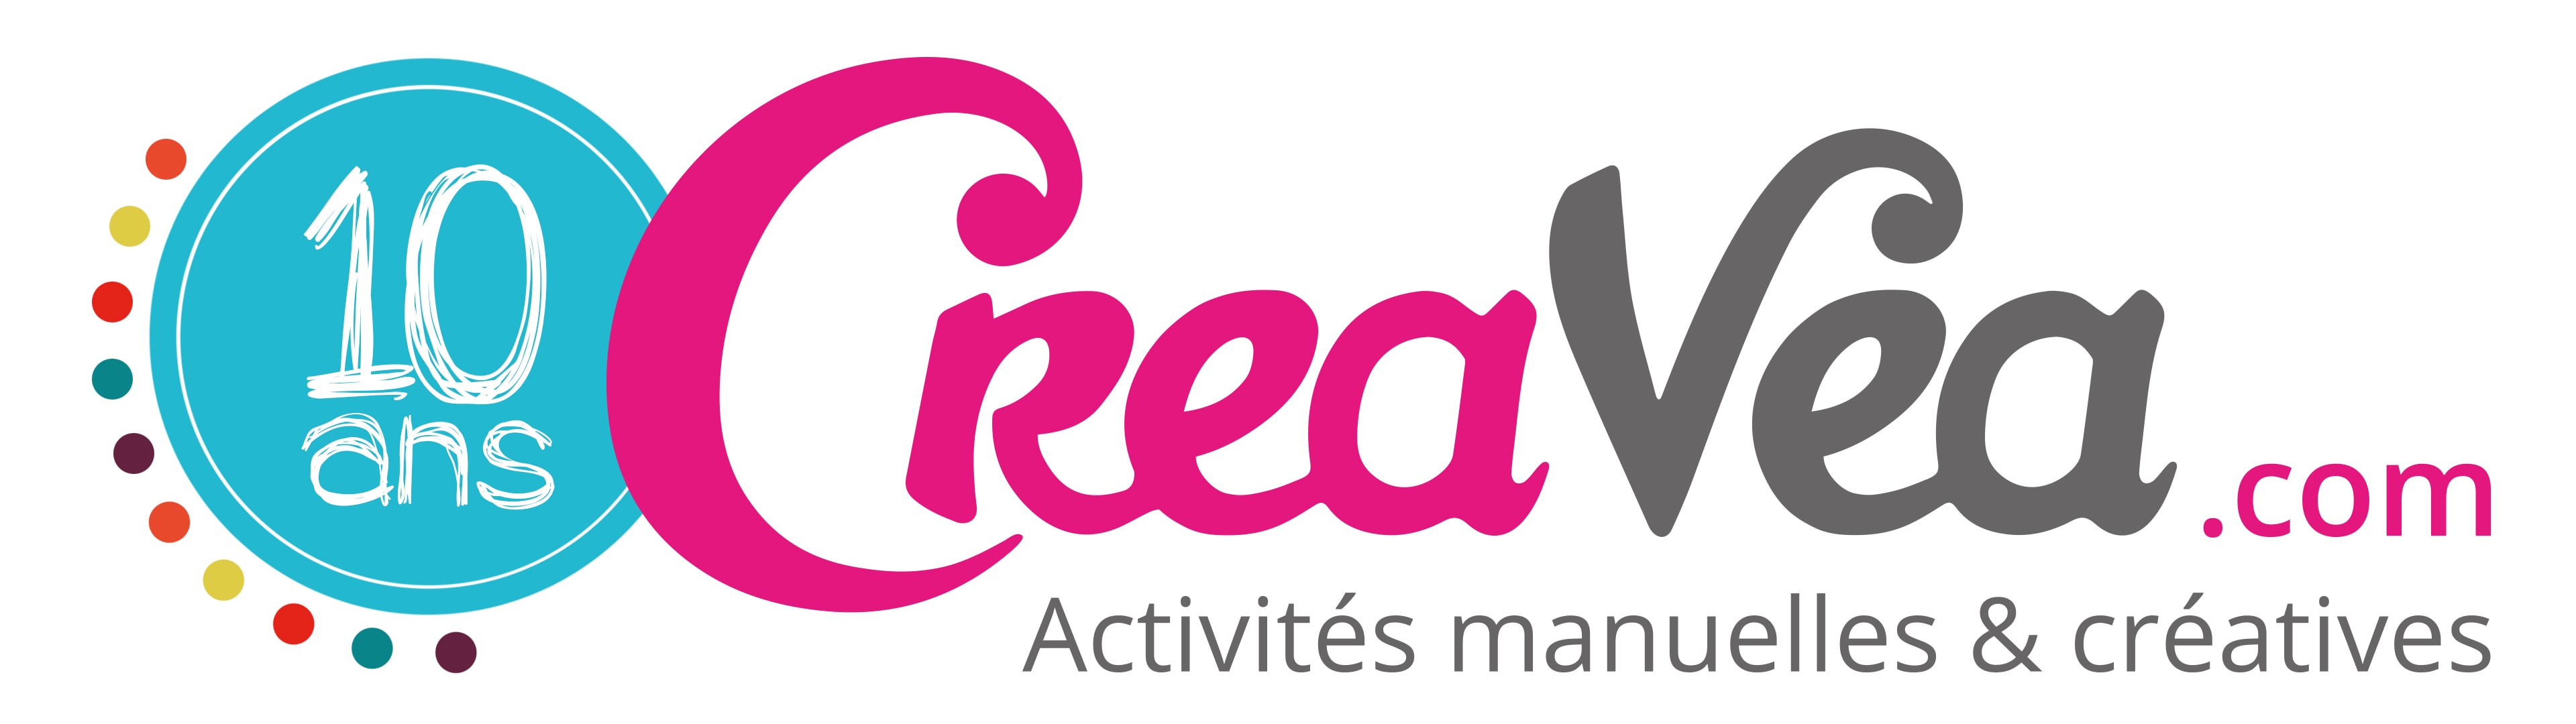 Fêtons les 10 ans de CreaVea.com